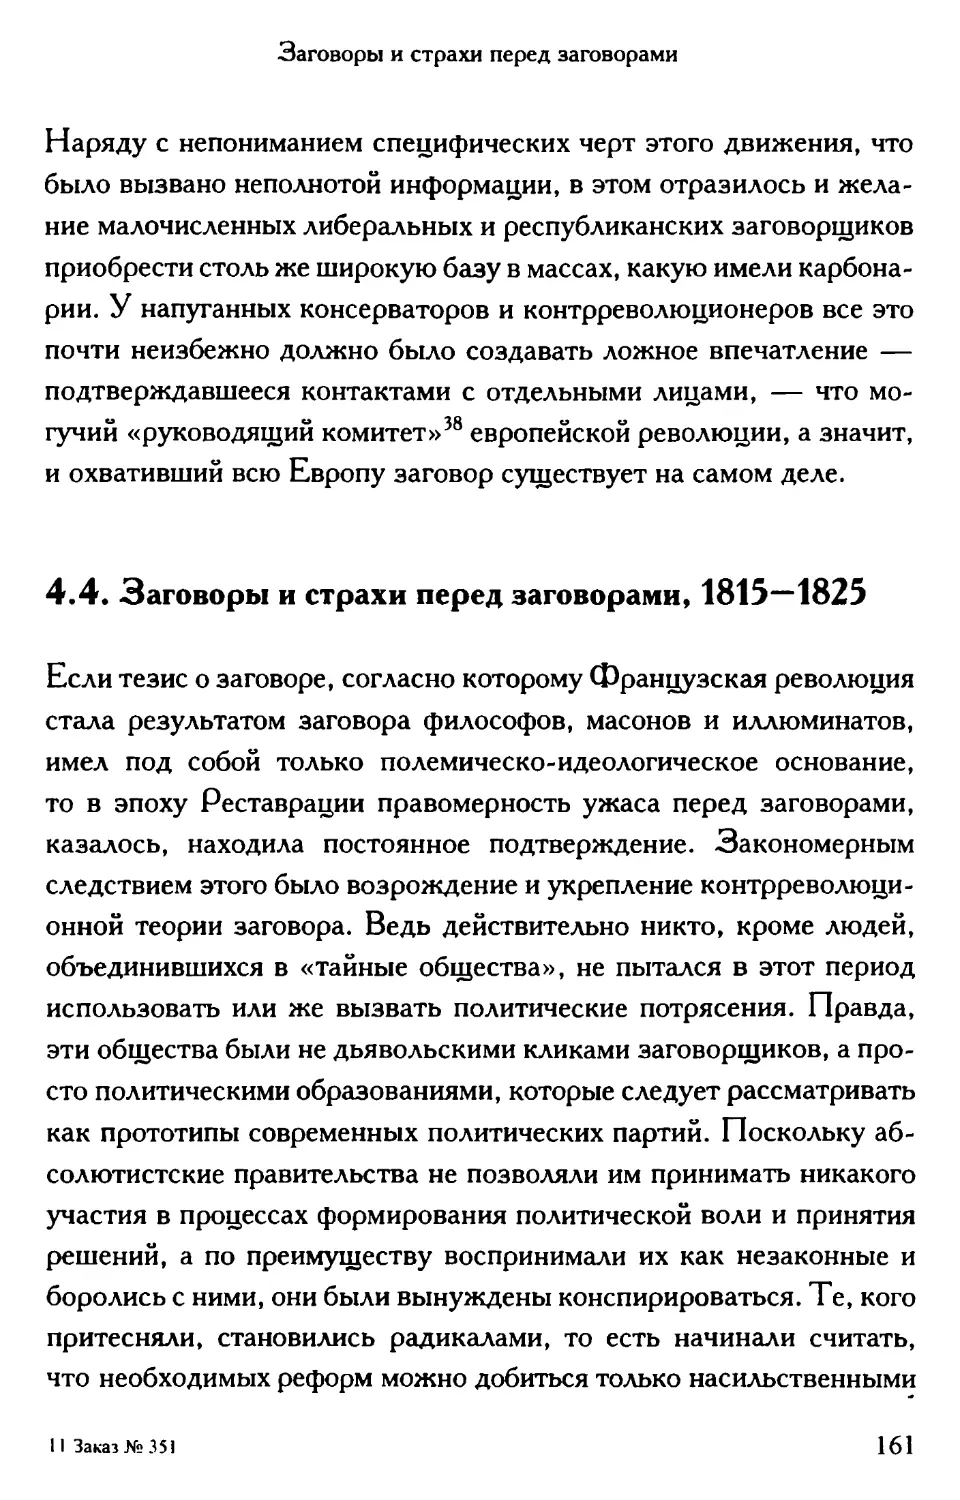 4.4. Заговоры и страхи перед заговорами, 1815—1825